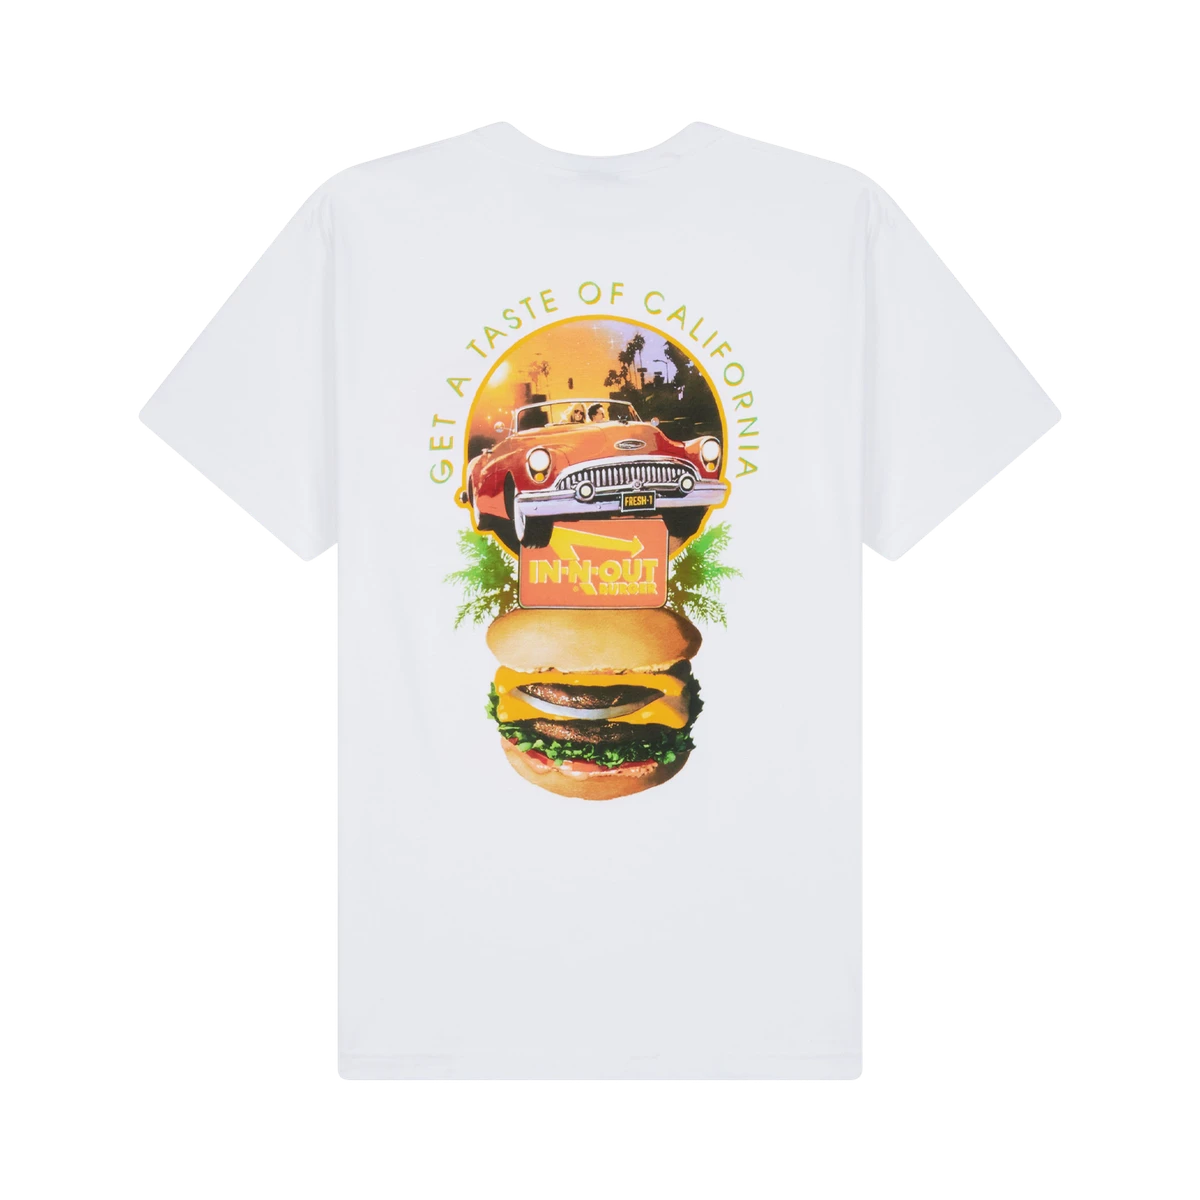 1993 "Taste of California" t-shirt